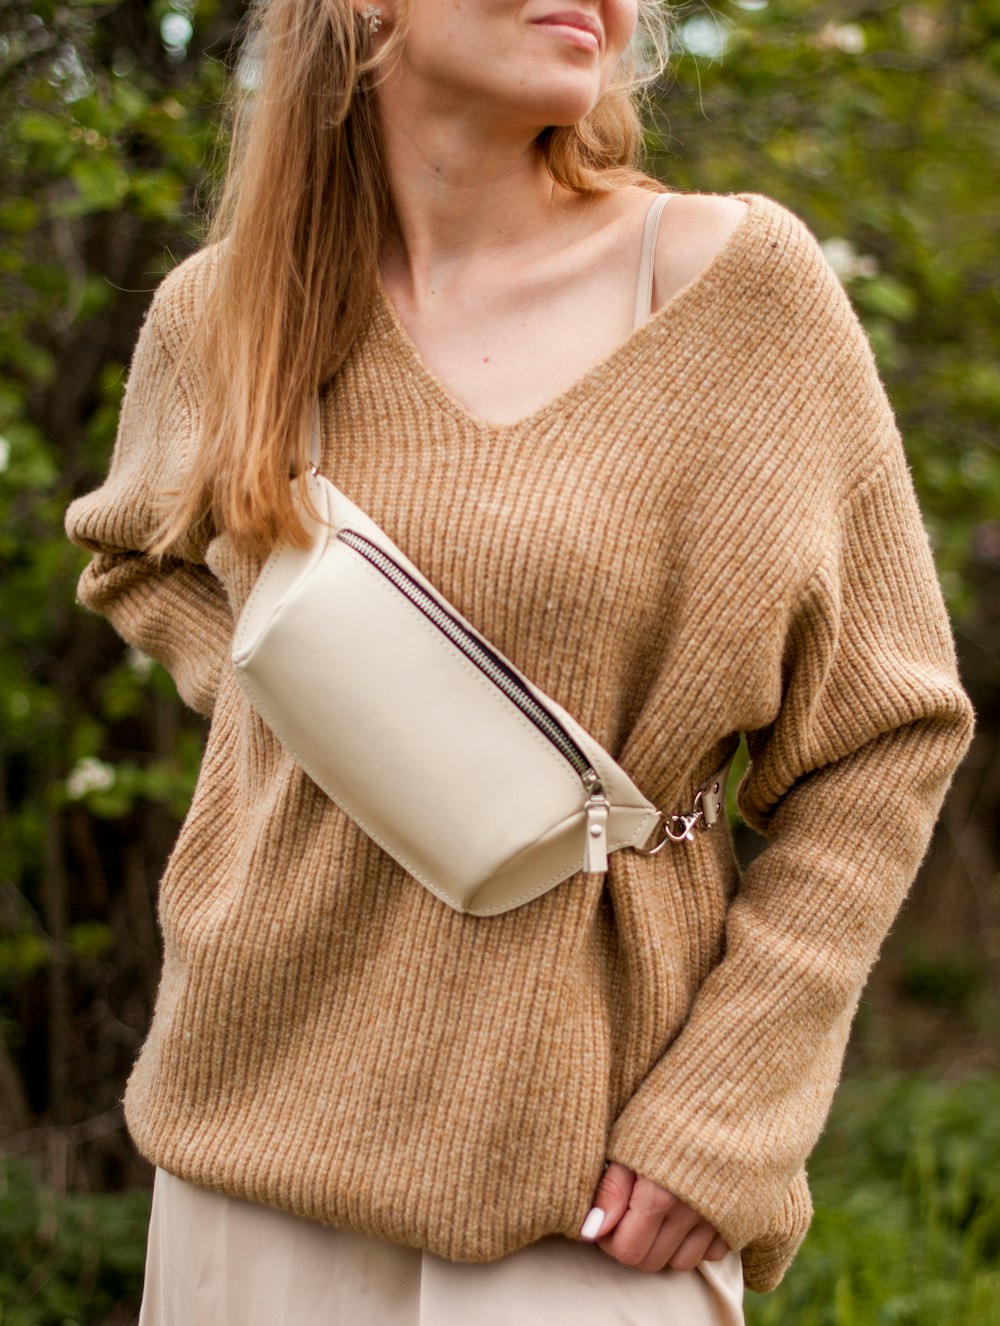 Mujer en suéter marrón sosteniendo una taza de cerámica blanca